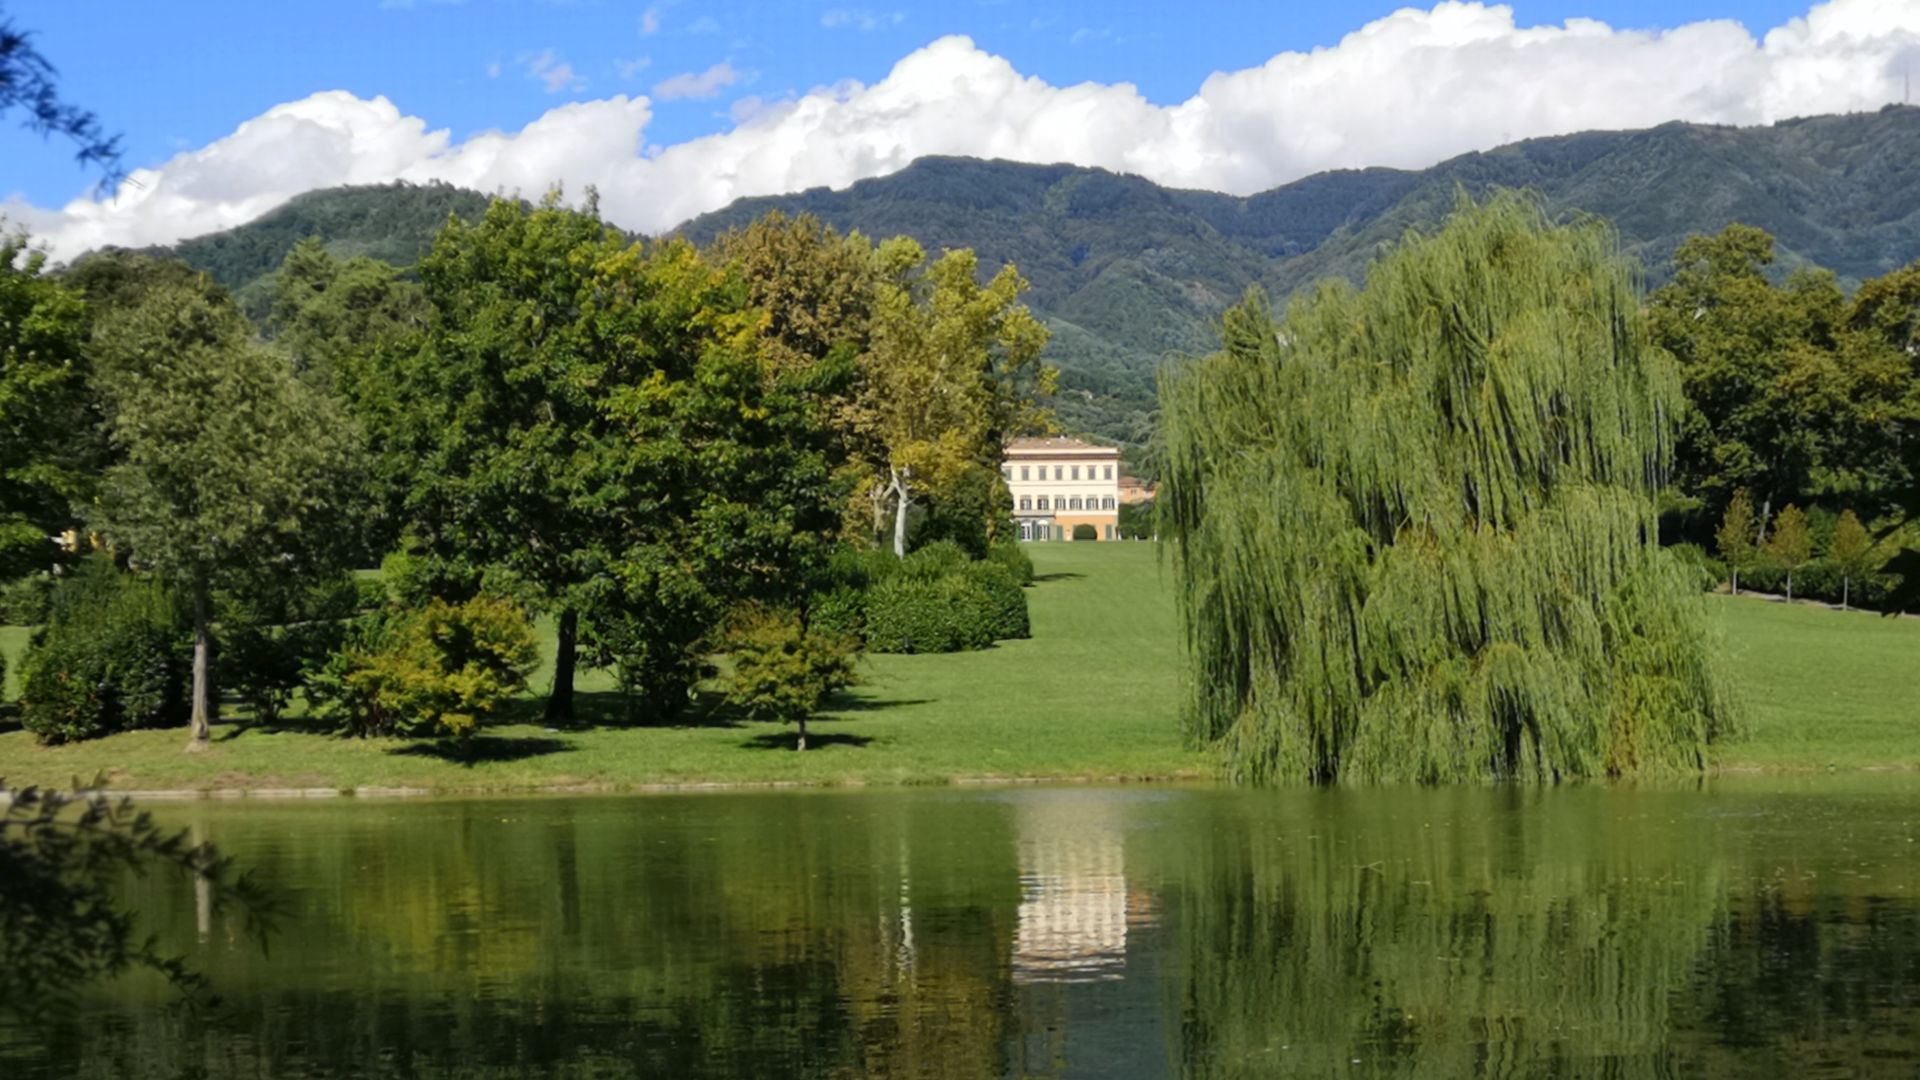 park of Villa Reale in Marlia